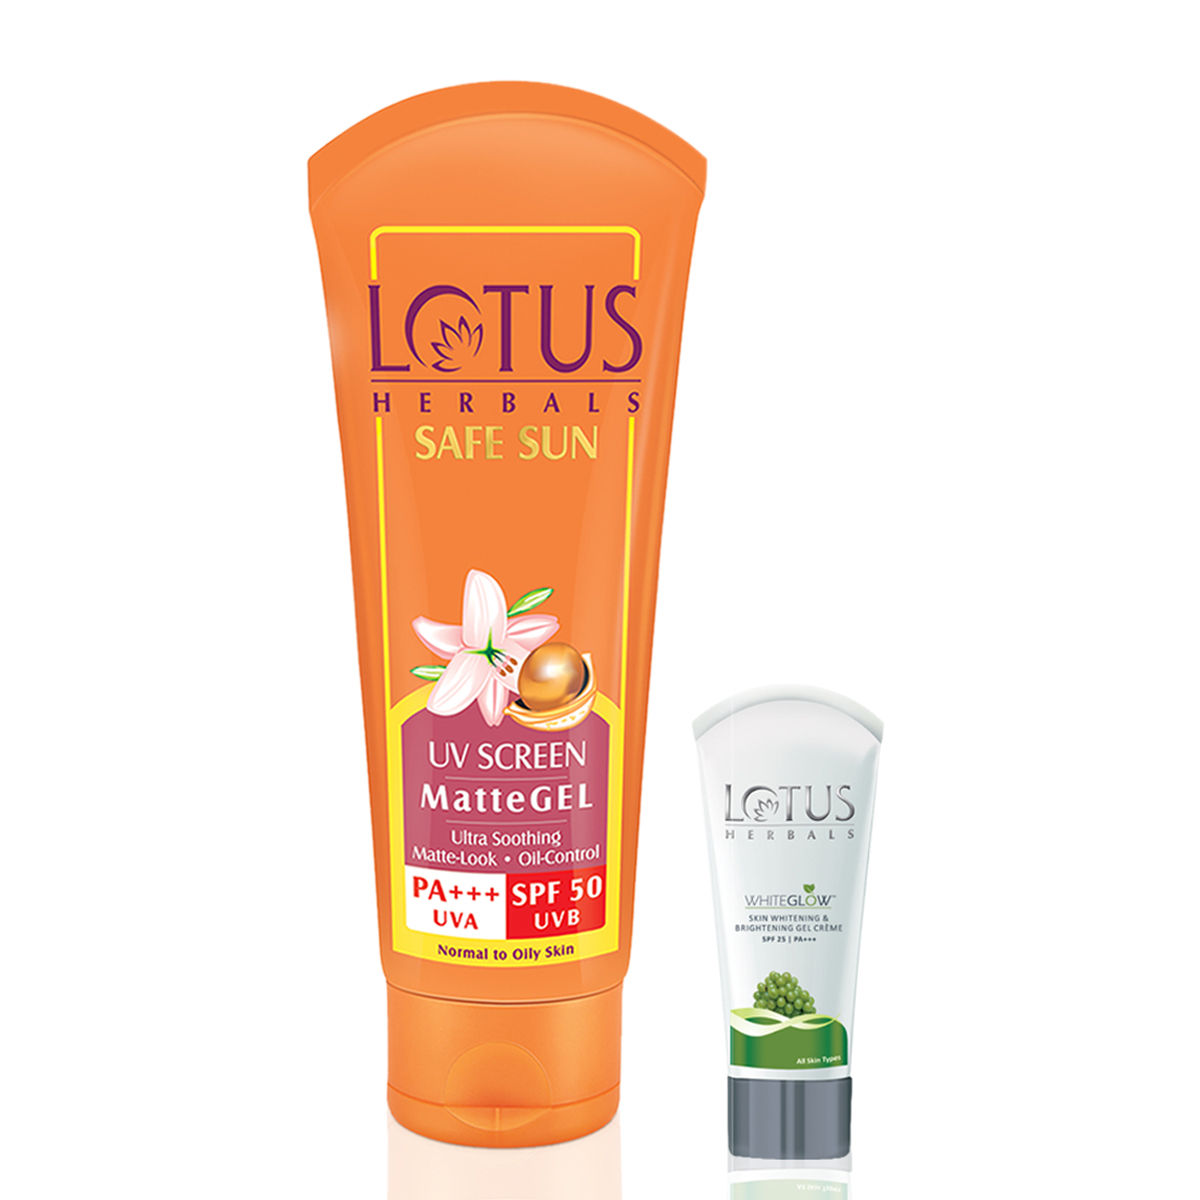 Buy Lotus Herbals Combo Pack - Safe Sun UV Screen Matte Gel Pa+++ Spf-50 & WhiteGlow Skin Whitening & Brightening Gel Creme Spf-25 (100 g + 18 g) - Purplle